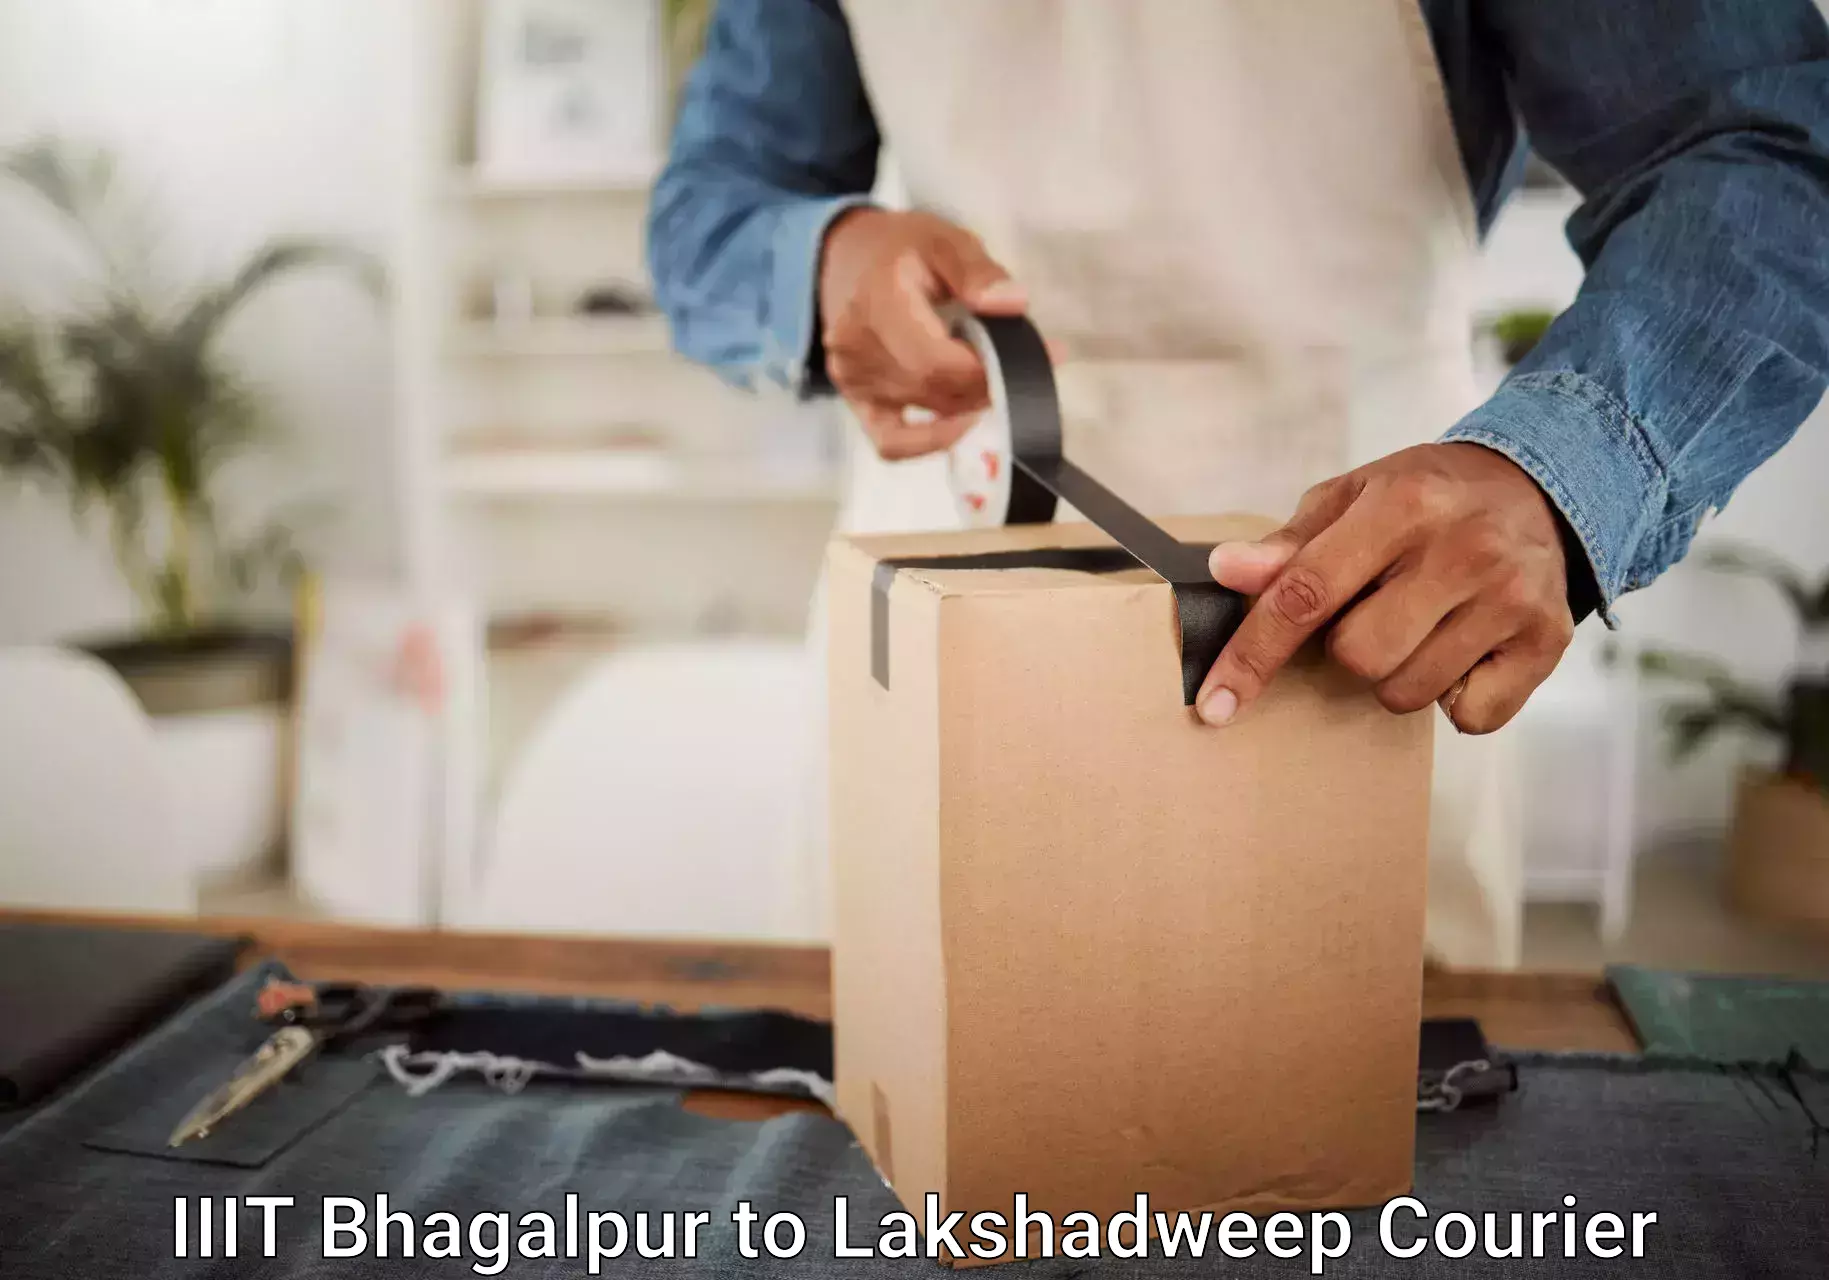 Luggage shipment tracking in IIIT Bhagalpur to Lakshadweep